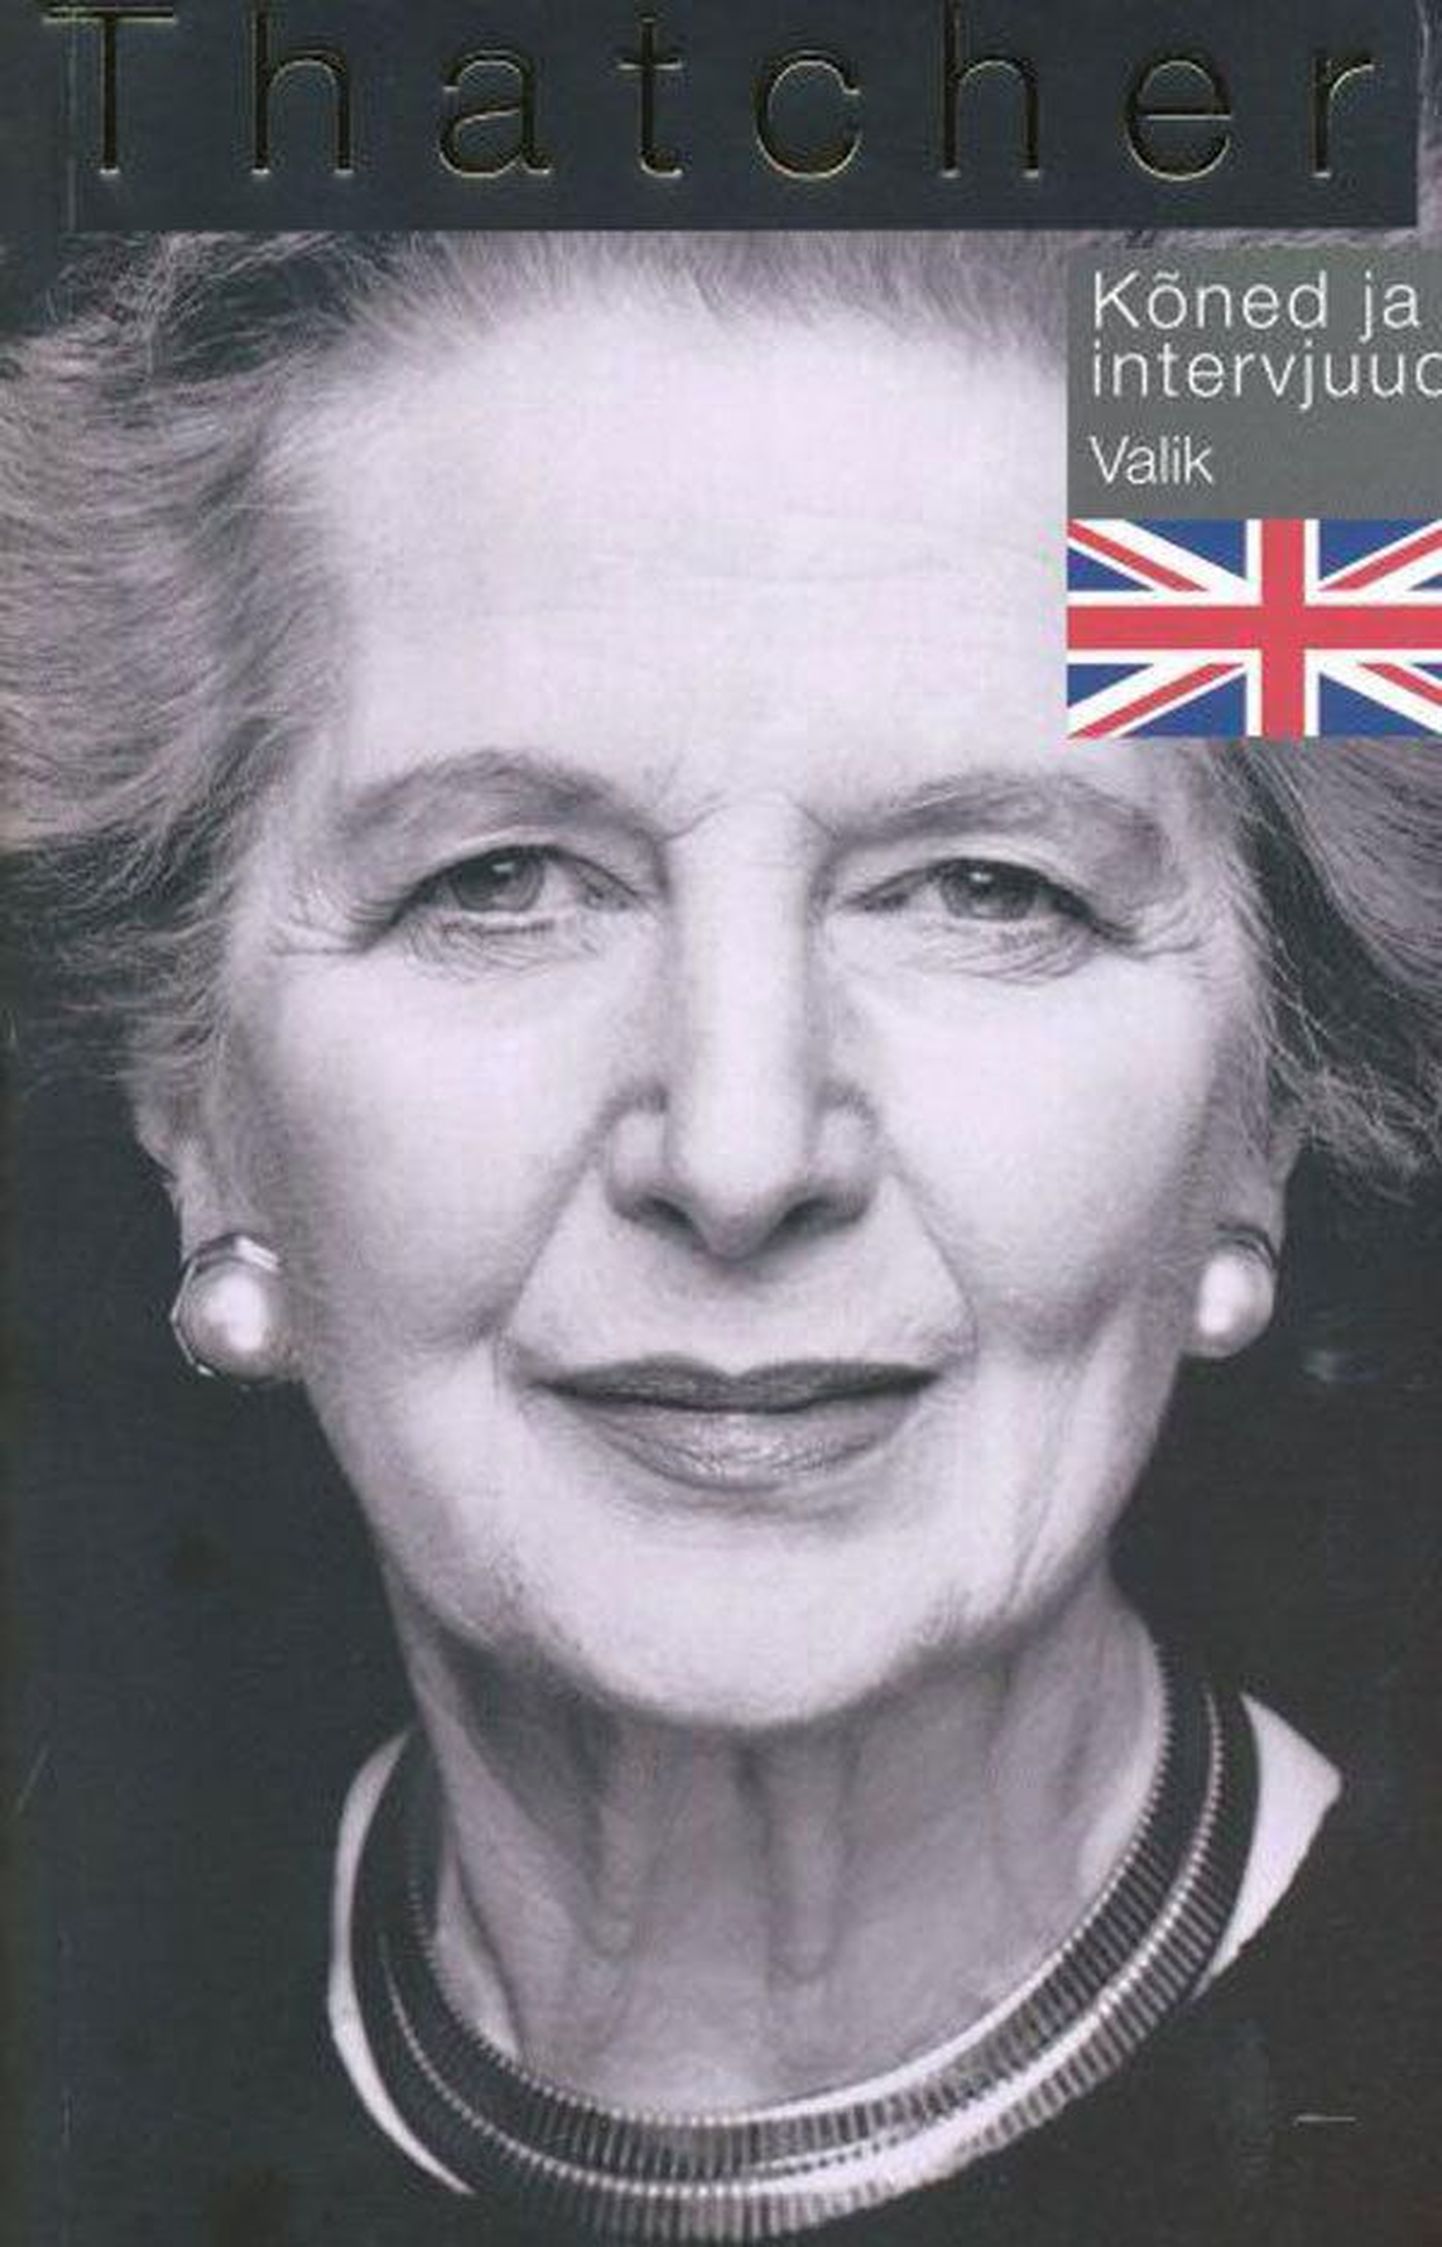 Raamat
Margaret Thatcher 
«Kõned ja intervjuud»
Kirjastus SE&JS, 2013
208 lk